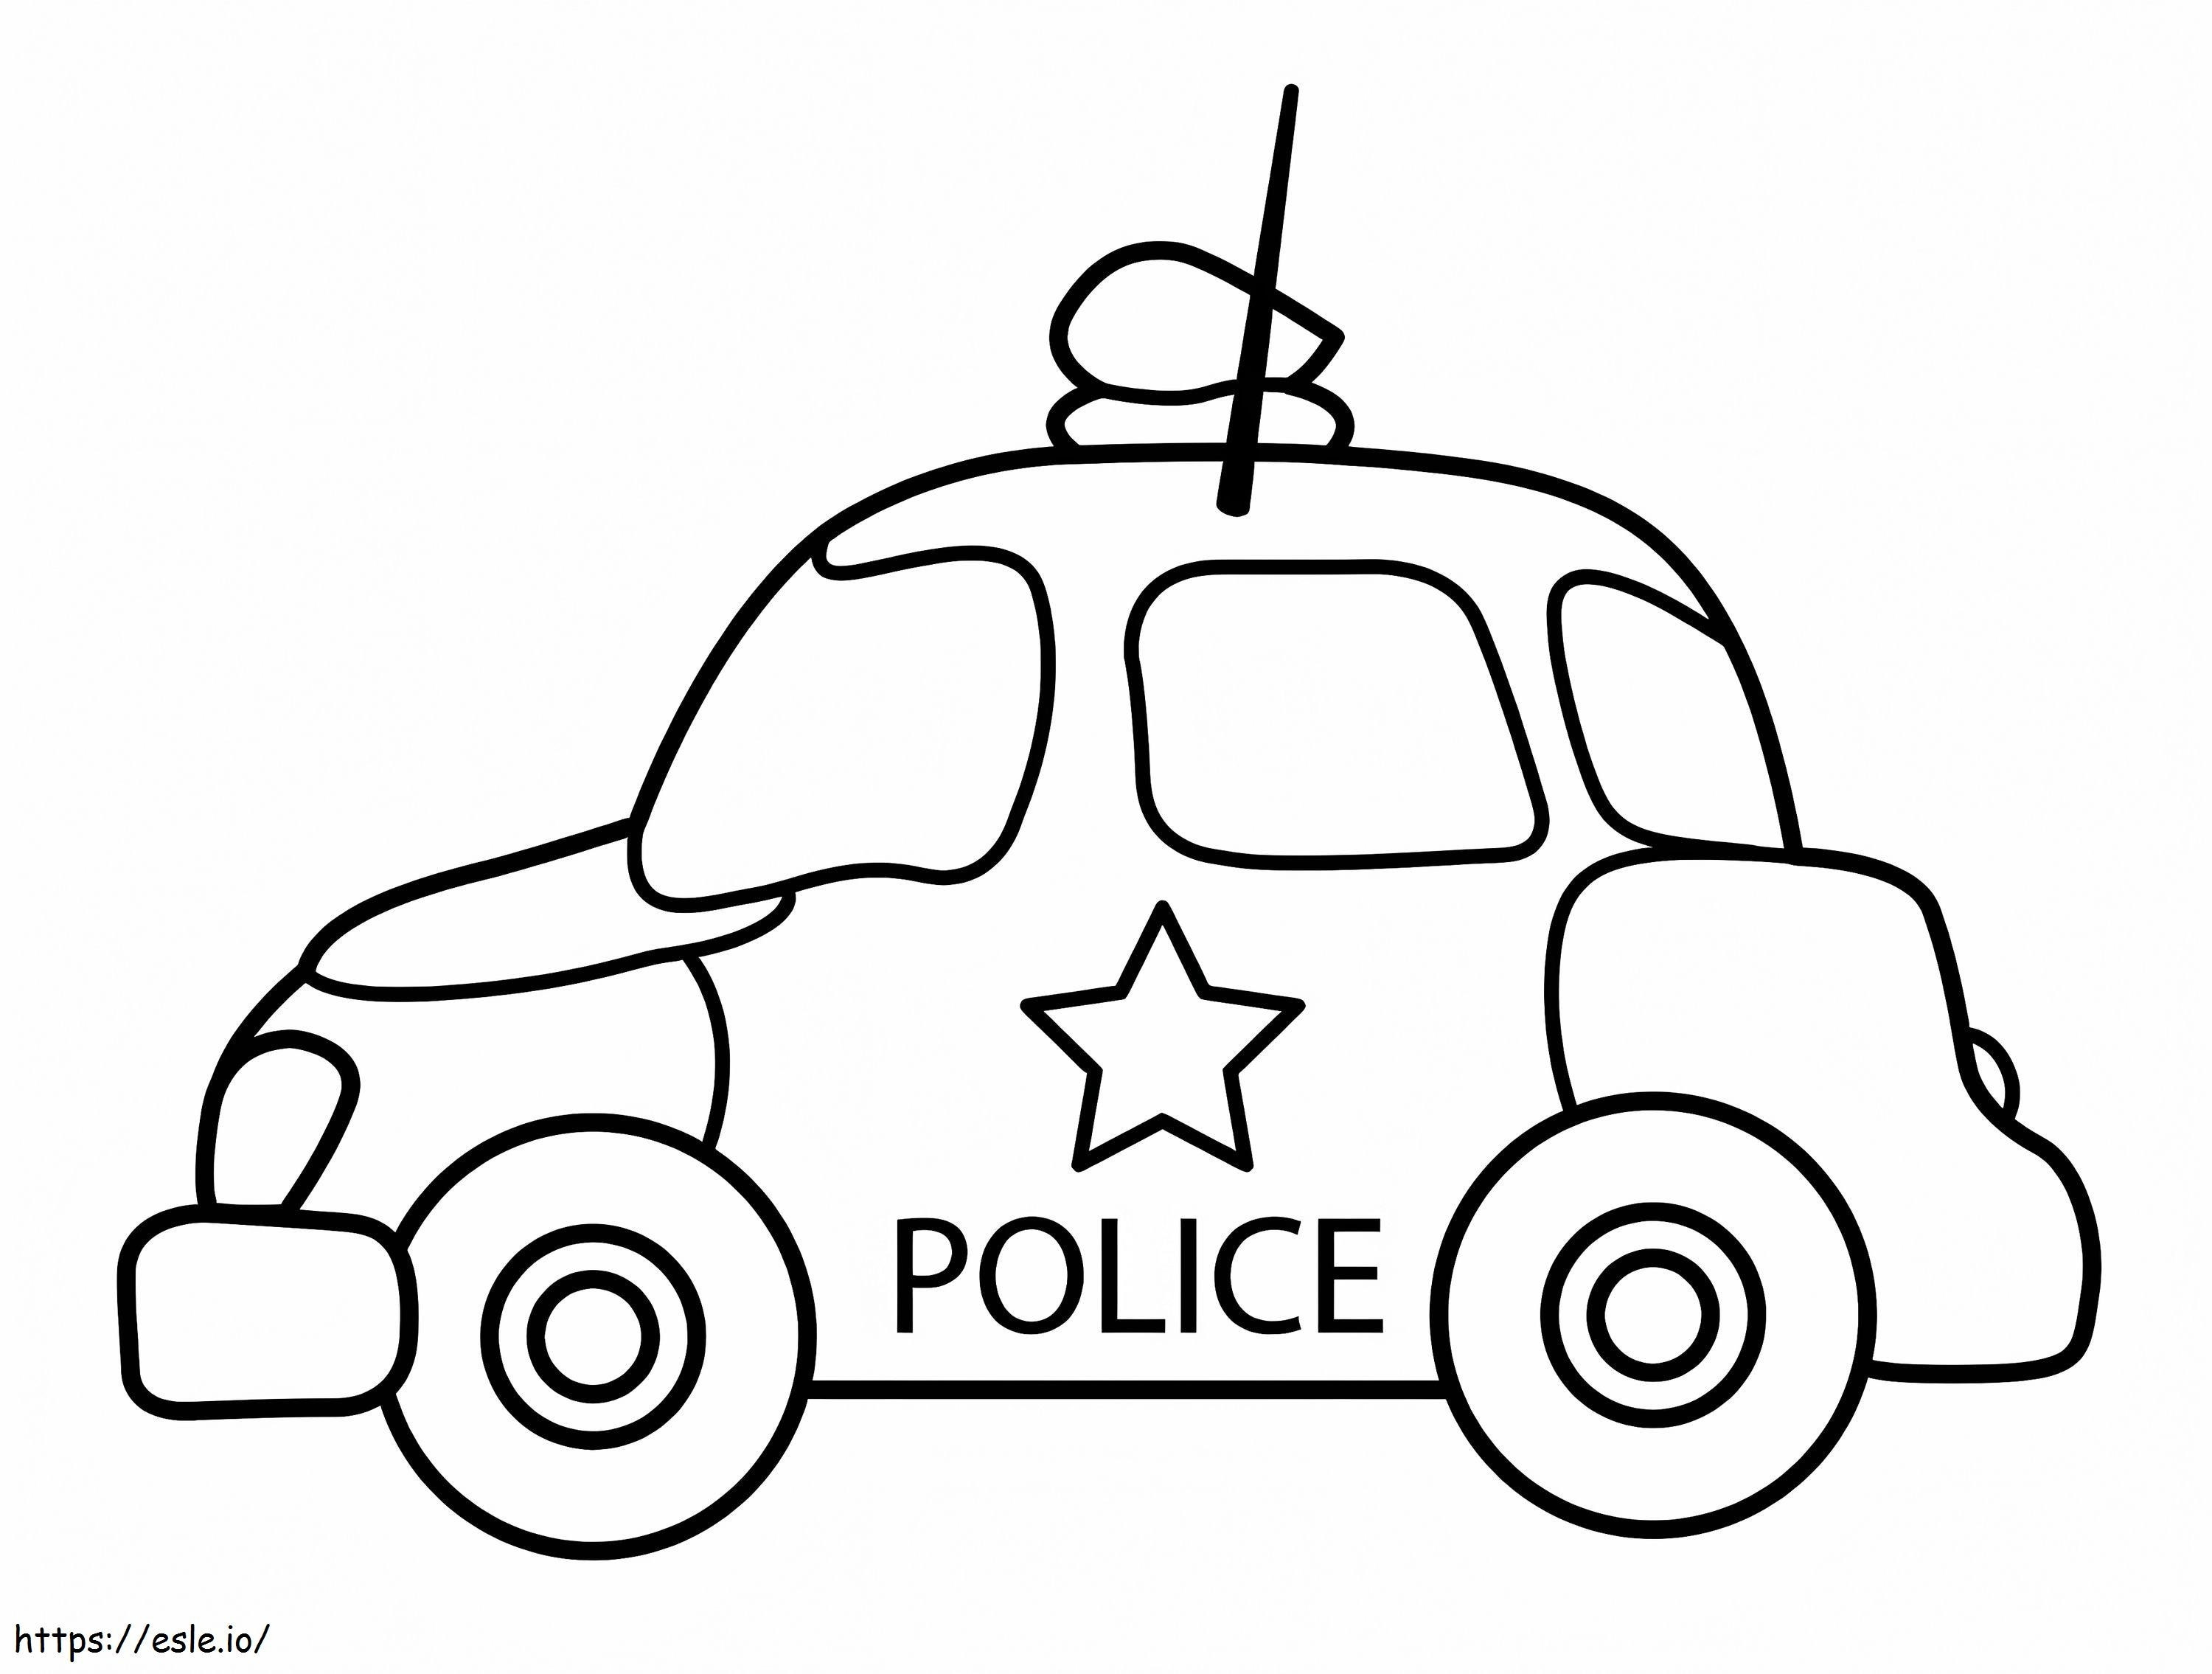 Entzückendes Polizeiauto ausmalbilder